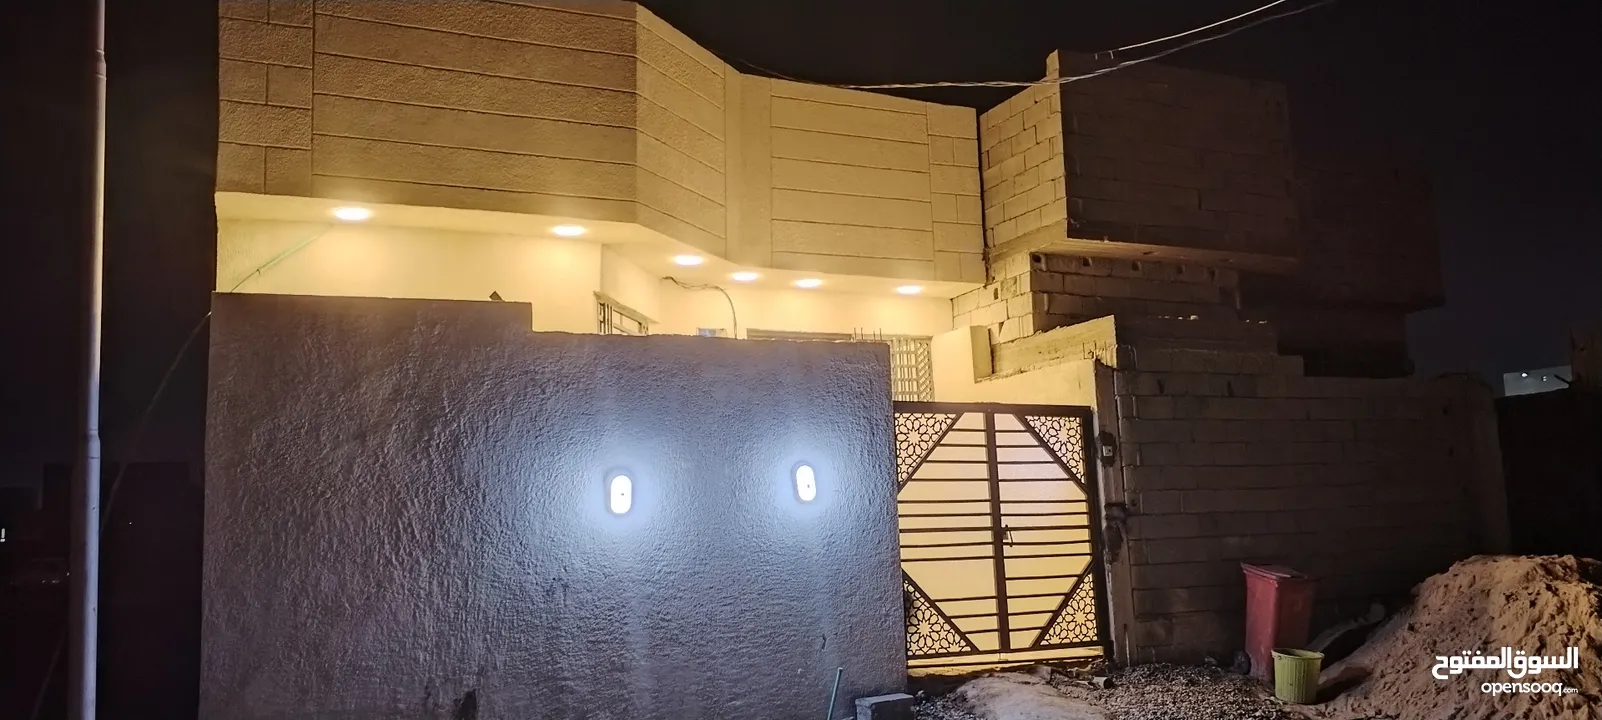 بيت طابو زراعي عراقي صاحب الارض جاري يحتوي على غرفتين وموزع استقبال مطبخ حمام داخلي وحمام خارجي طارم